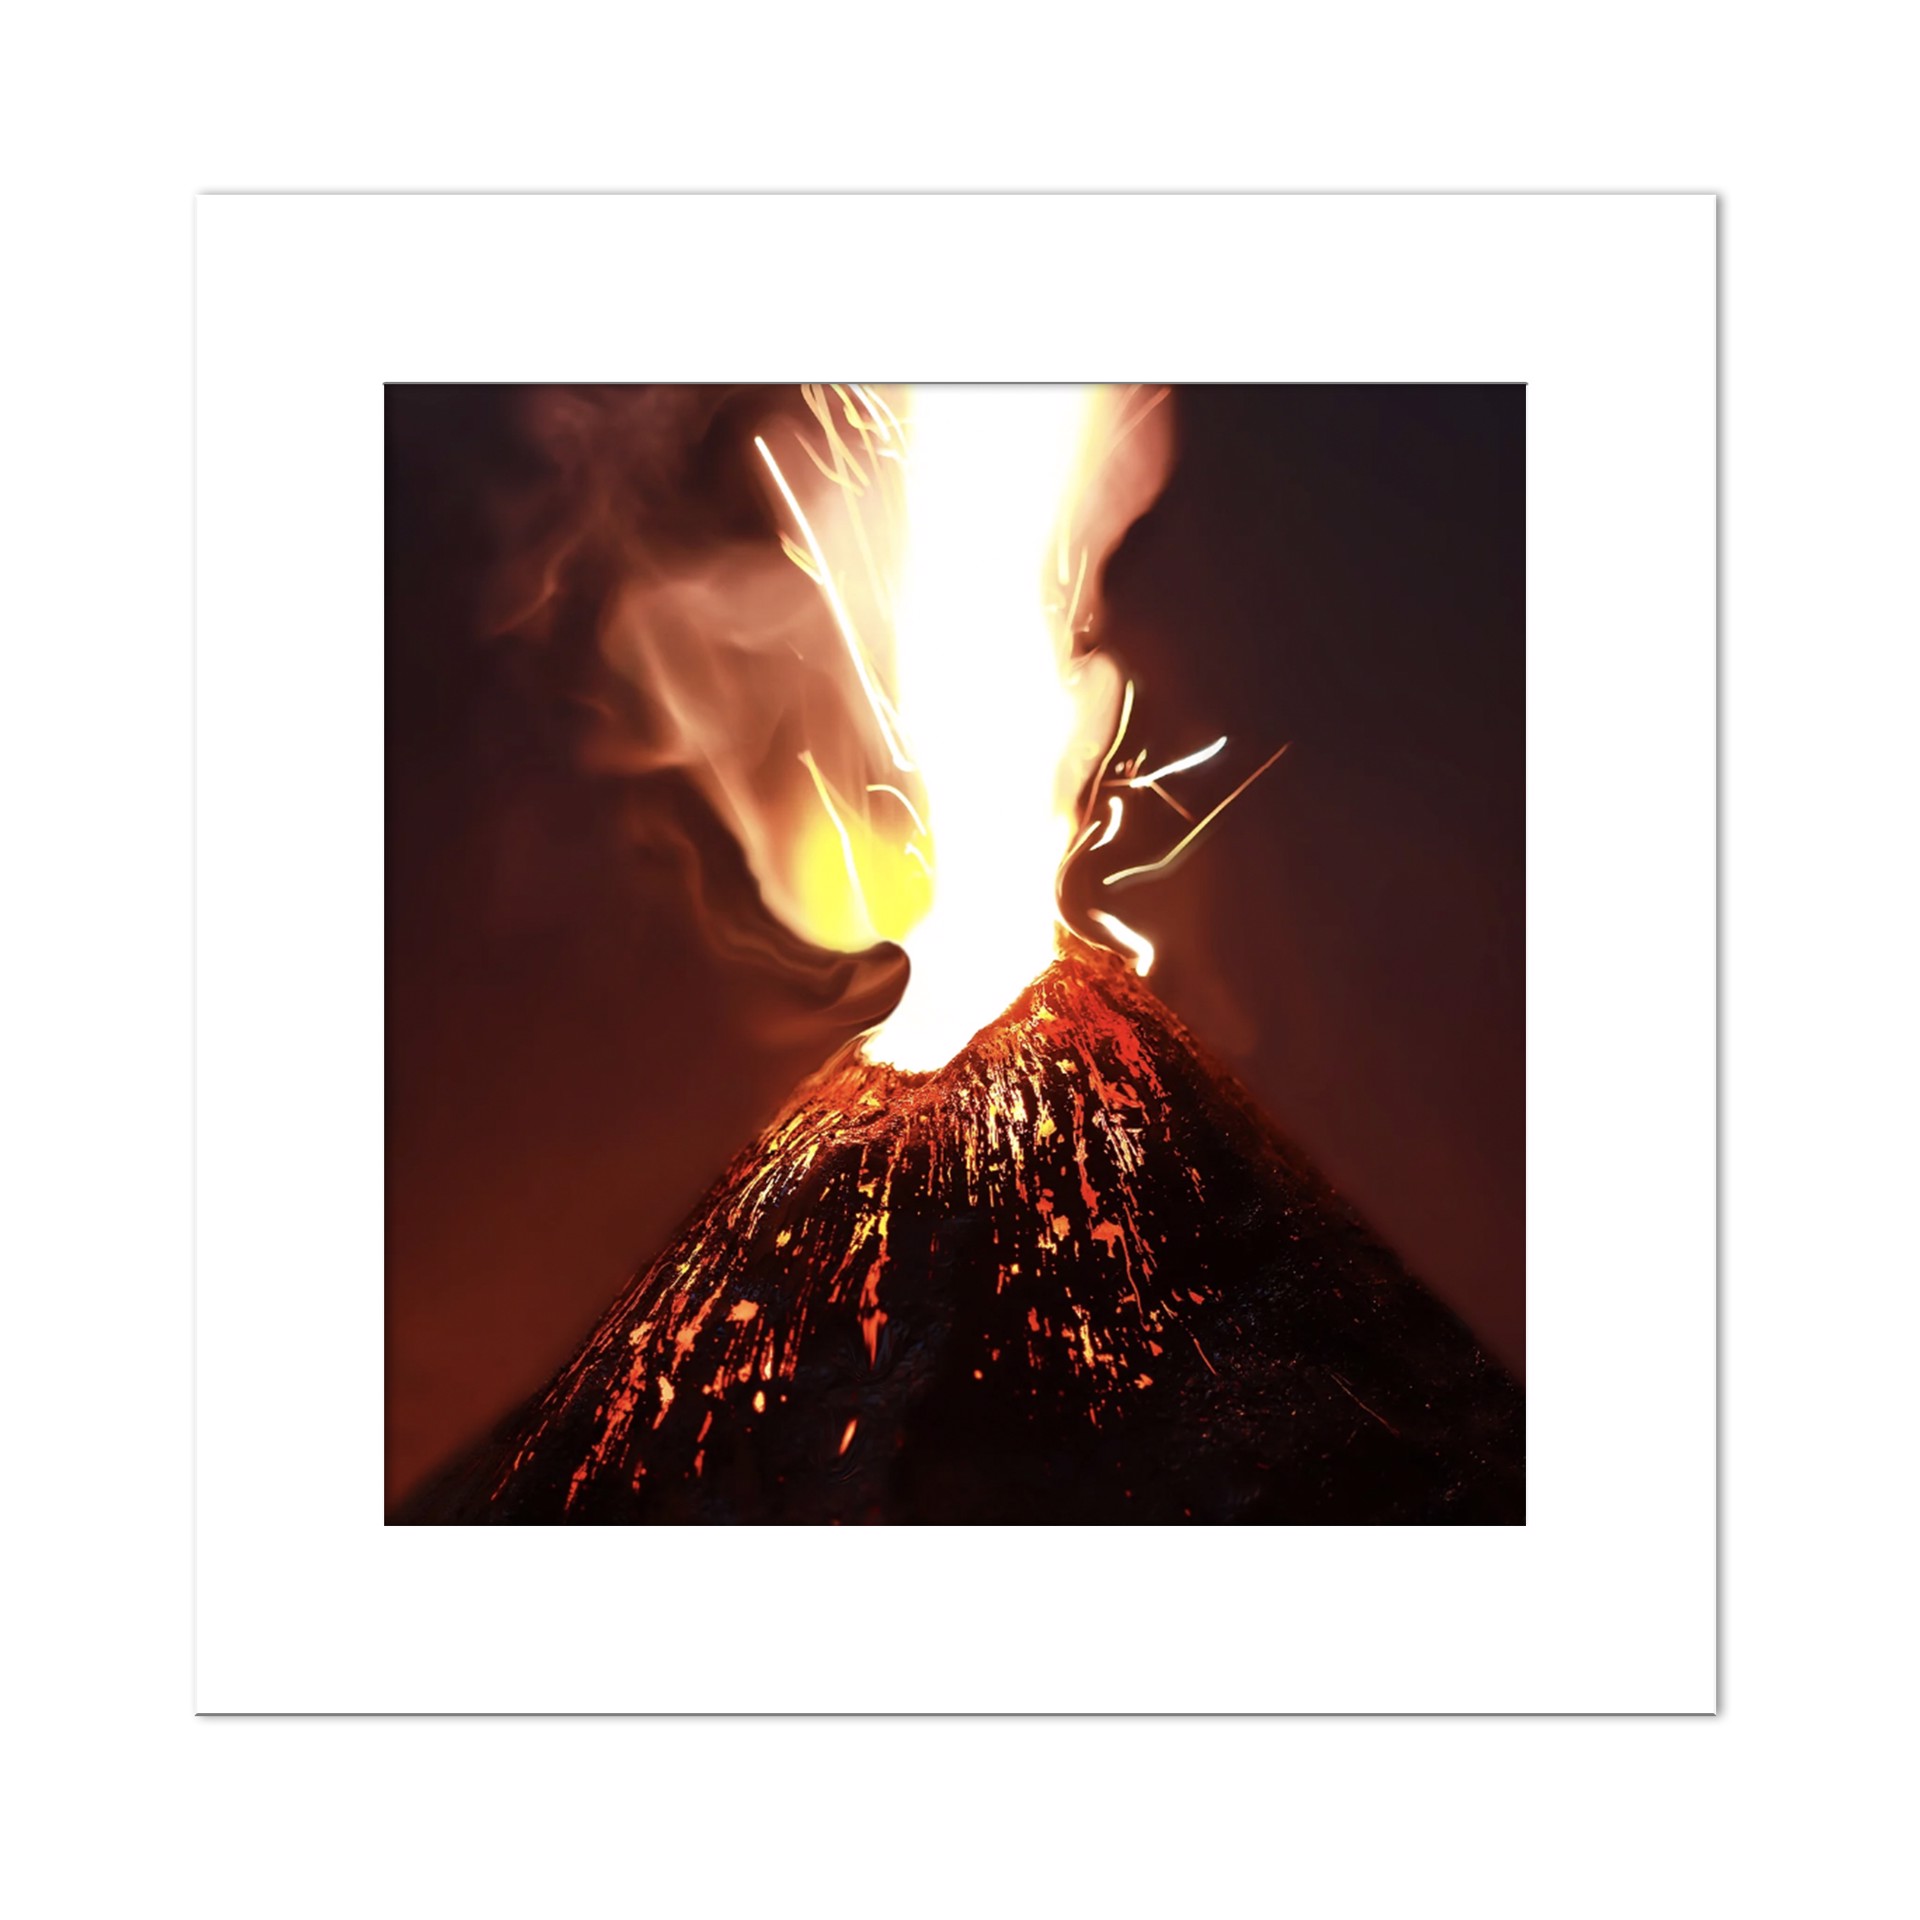 Volcano by Stephen Dorsett